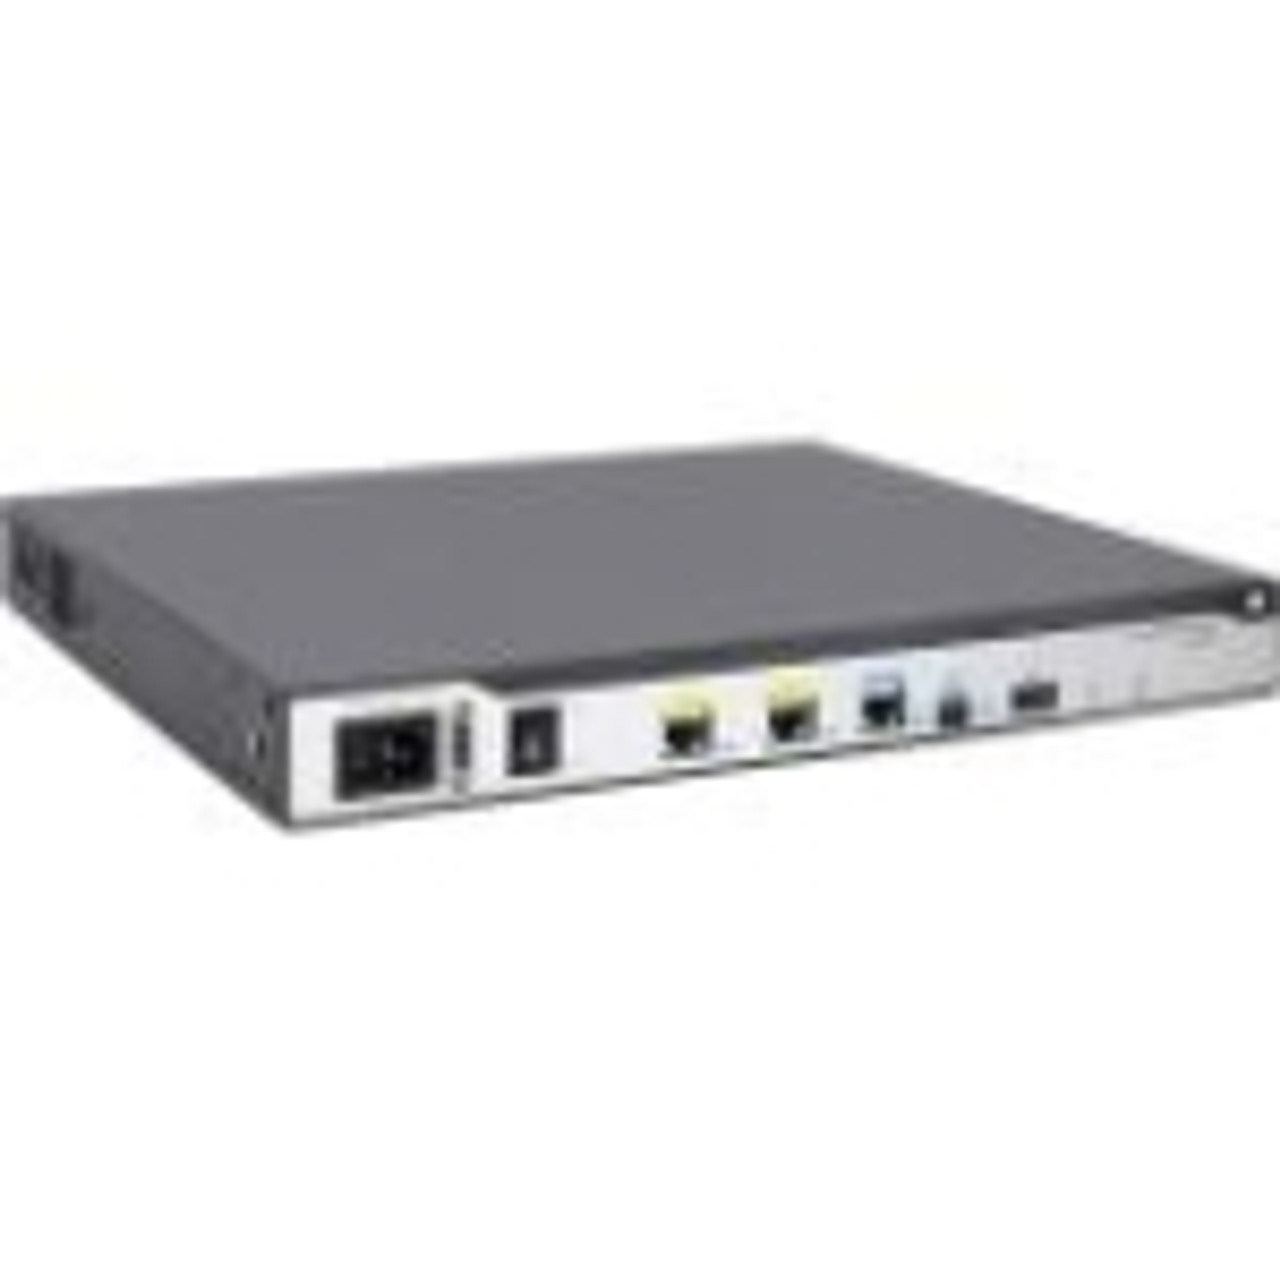 JG734AR HP MSR2004-24 AC Router Refurbished 27 Ports 5 Slots Gigabit Ethernet (Refurbished)